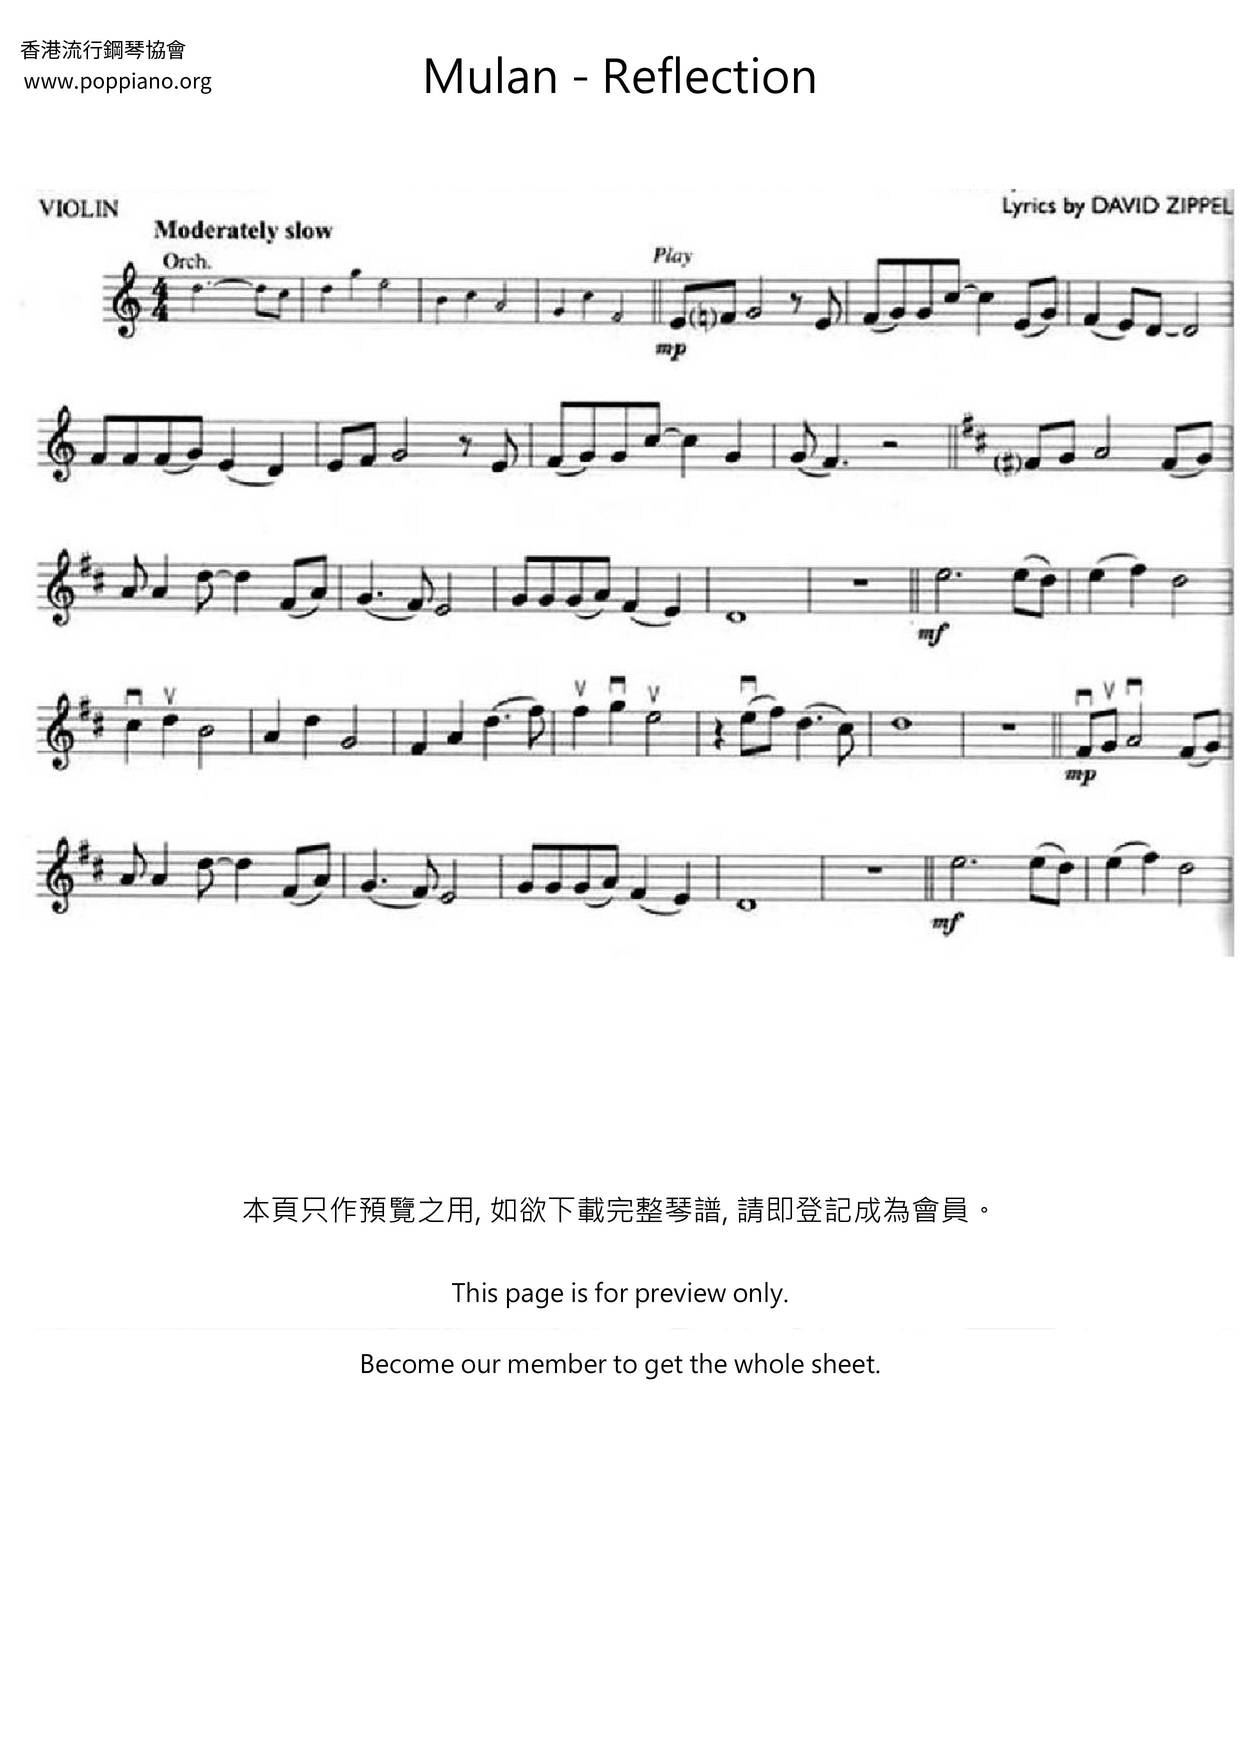 Mulan - Reflectionピアノ譜